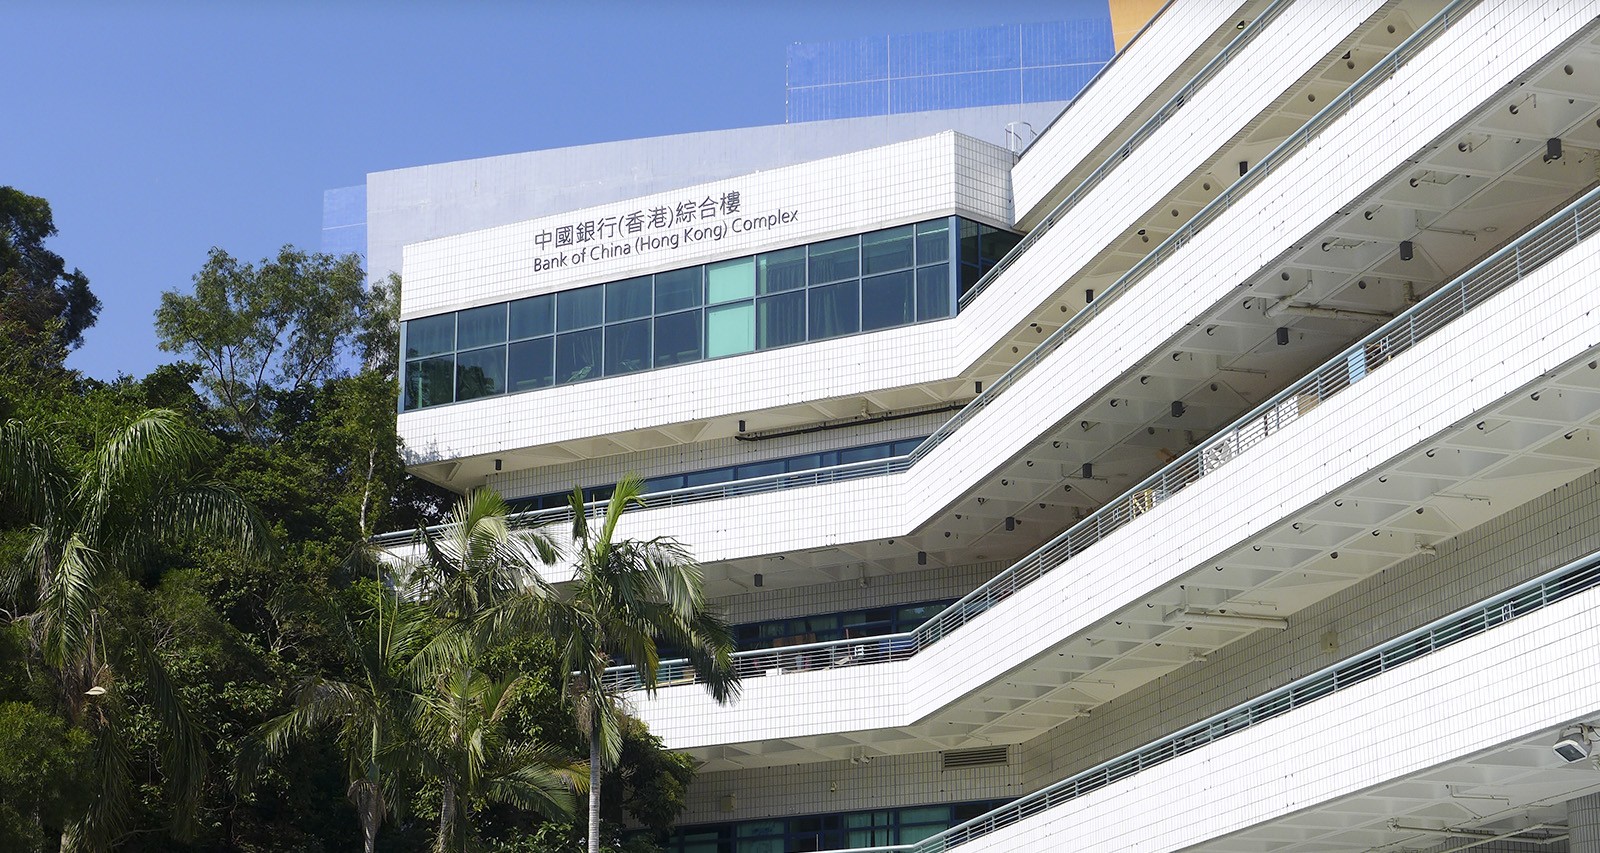 Amenities Building named after Bank of China (Hong Kong) 